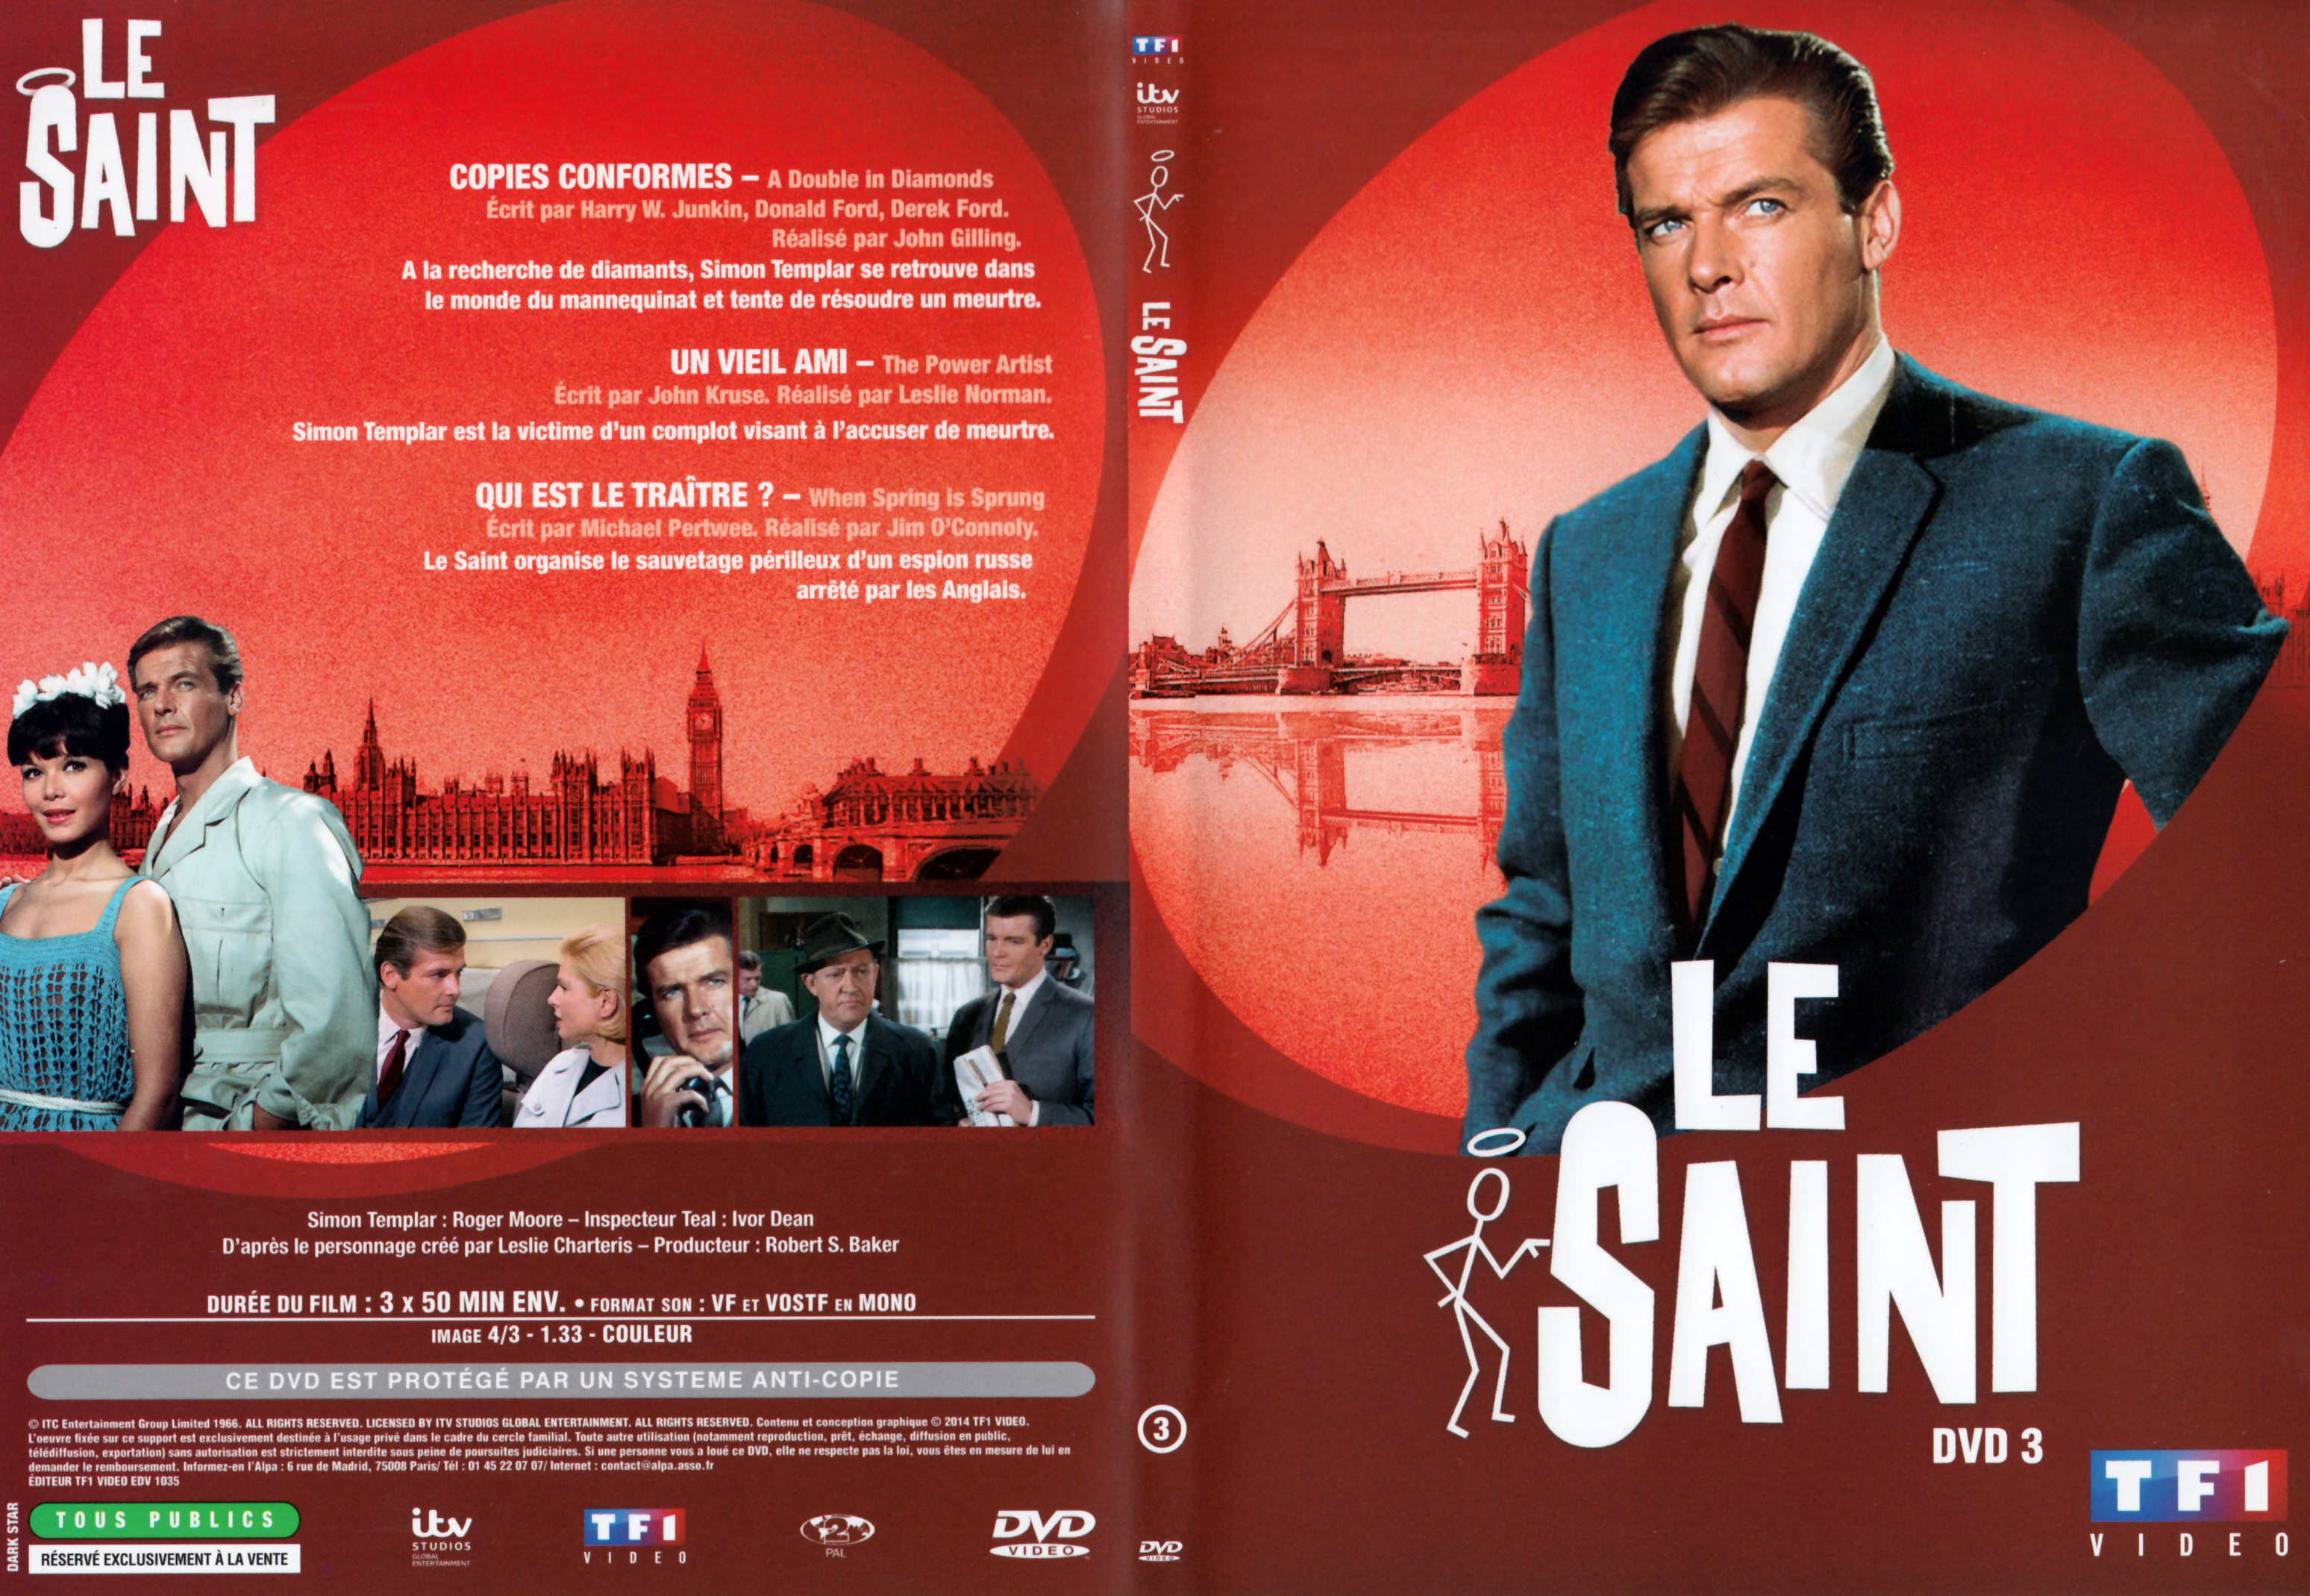 Jaquette DVD Le saint Saison 5 DVD 3